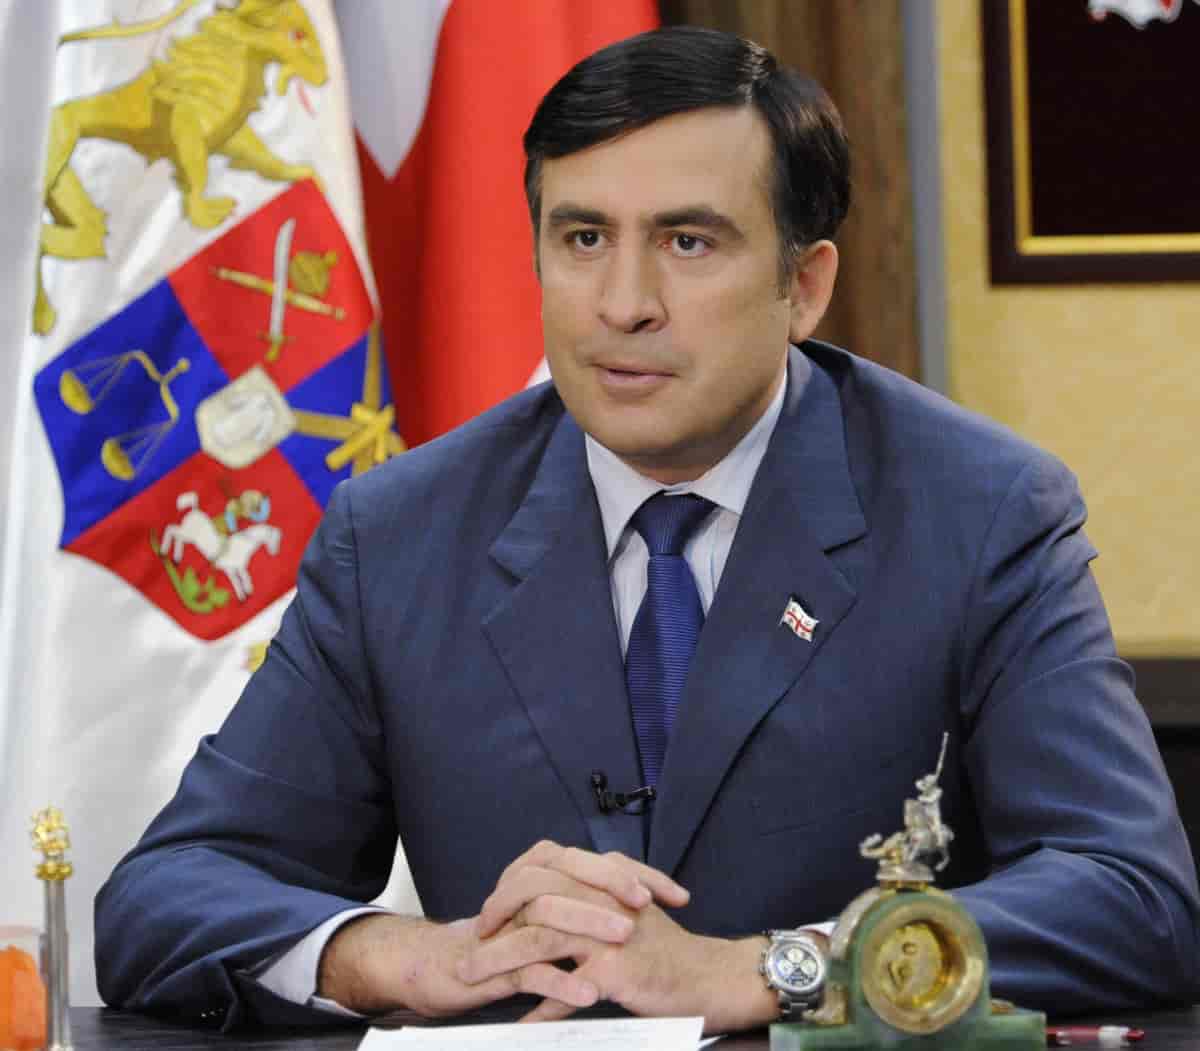 Mikheil Saakasjvili